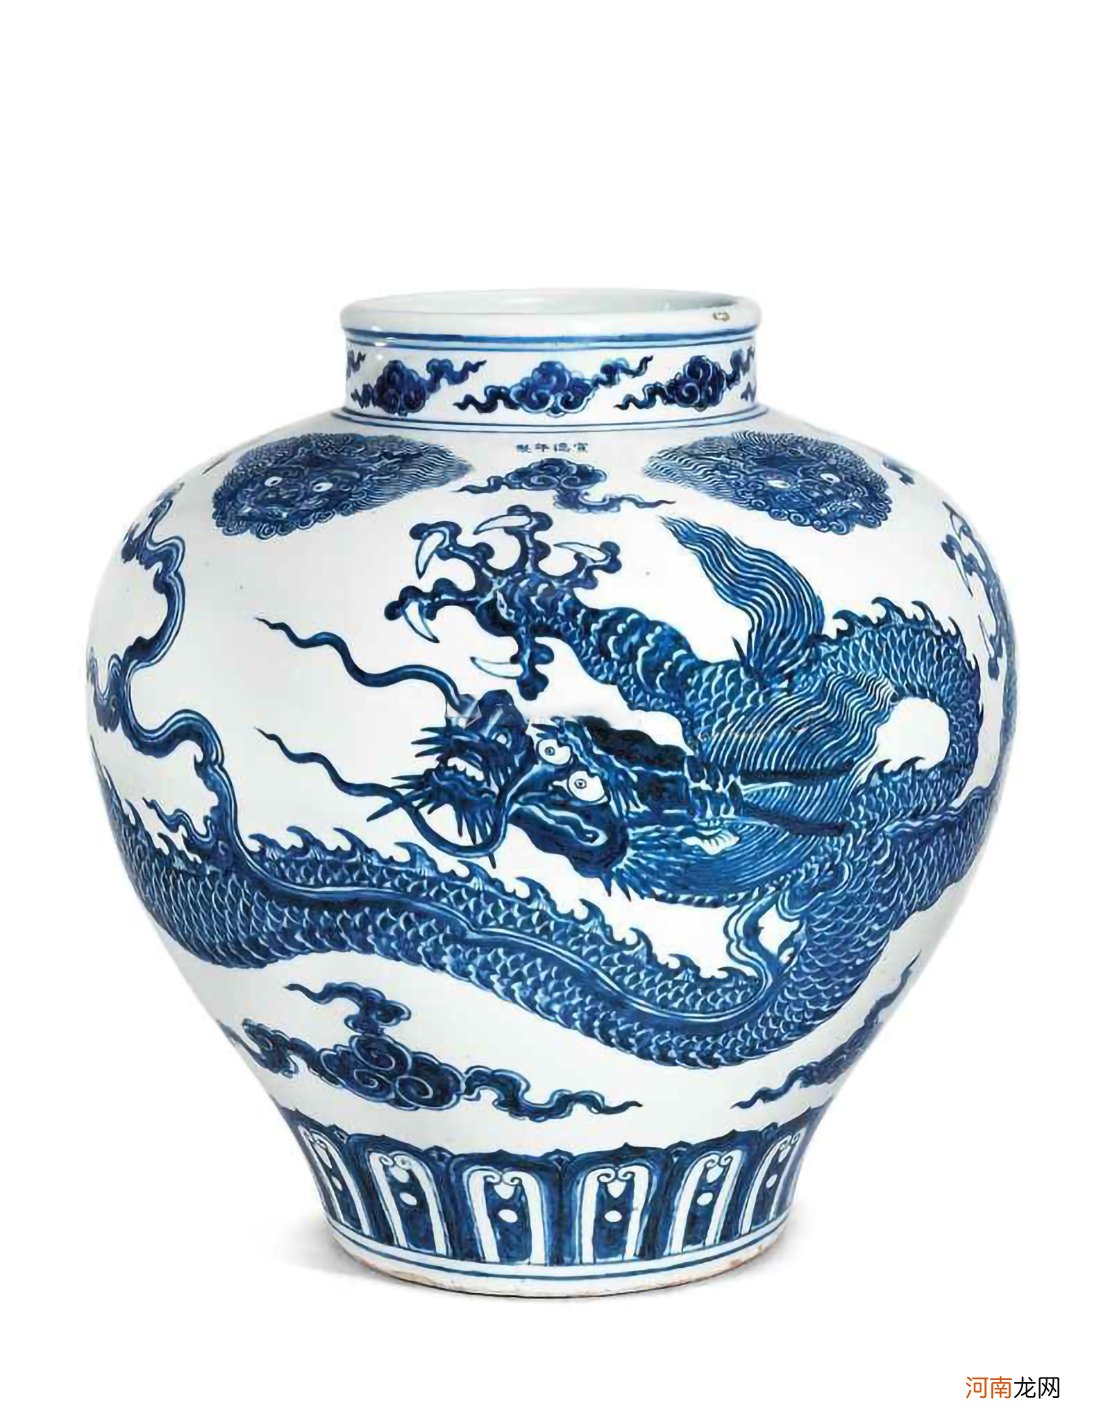 近10年中国明清瓷器排行榜 明清瓷器图片大全及特点